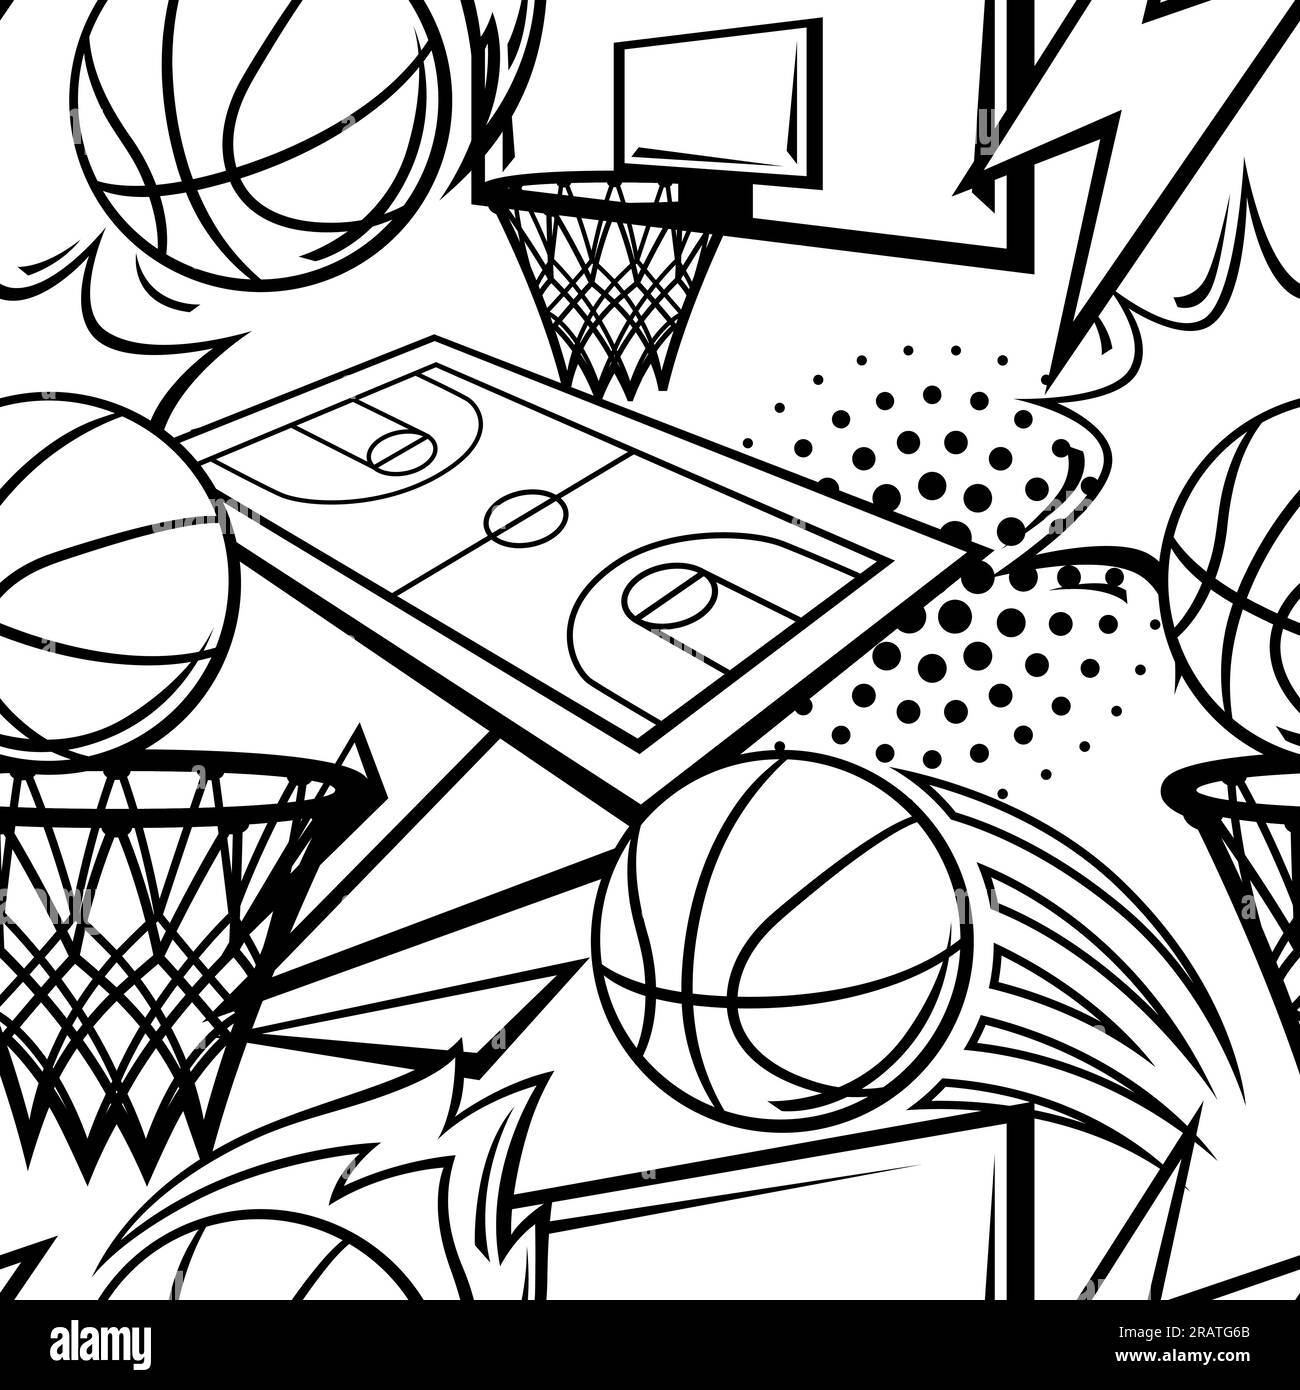 Modello con oggetti da basket. Illustrazione del club sportivo. Illustrazione Vettoriale